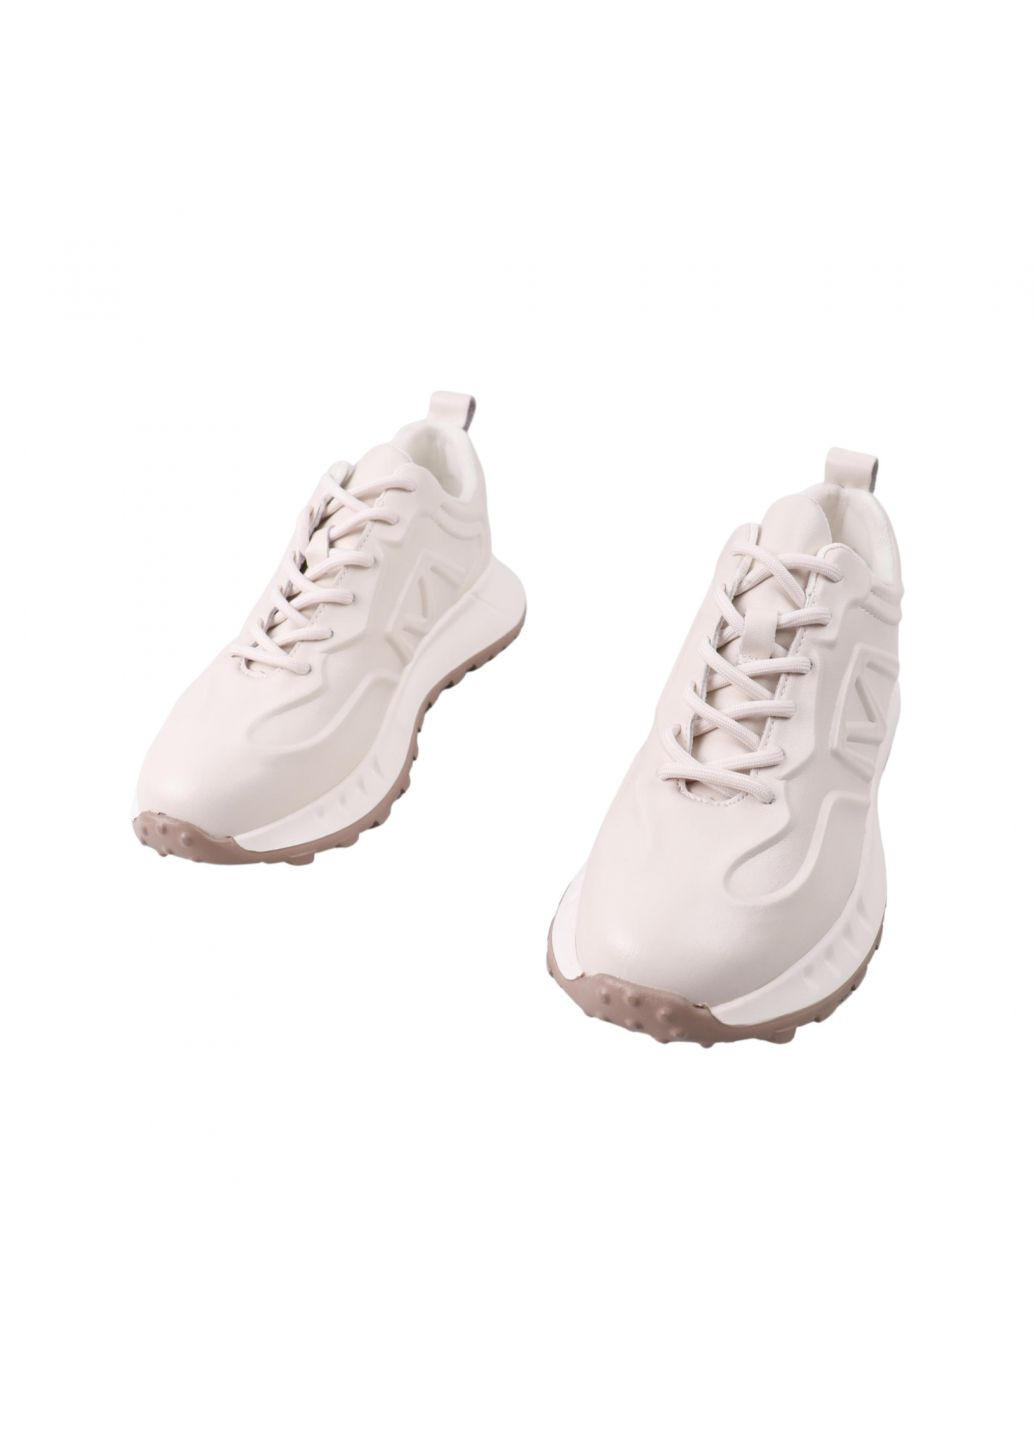 Білі кросівки жіночі молочні натуральна шкіра Lifexpert 1410-23DK